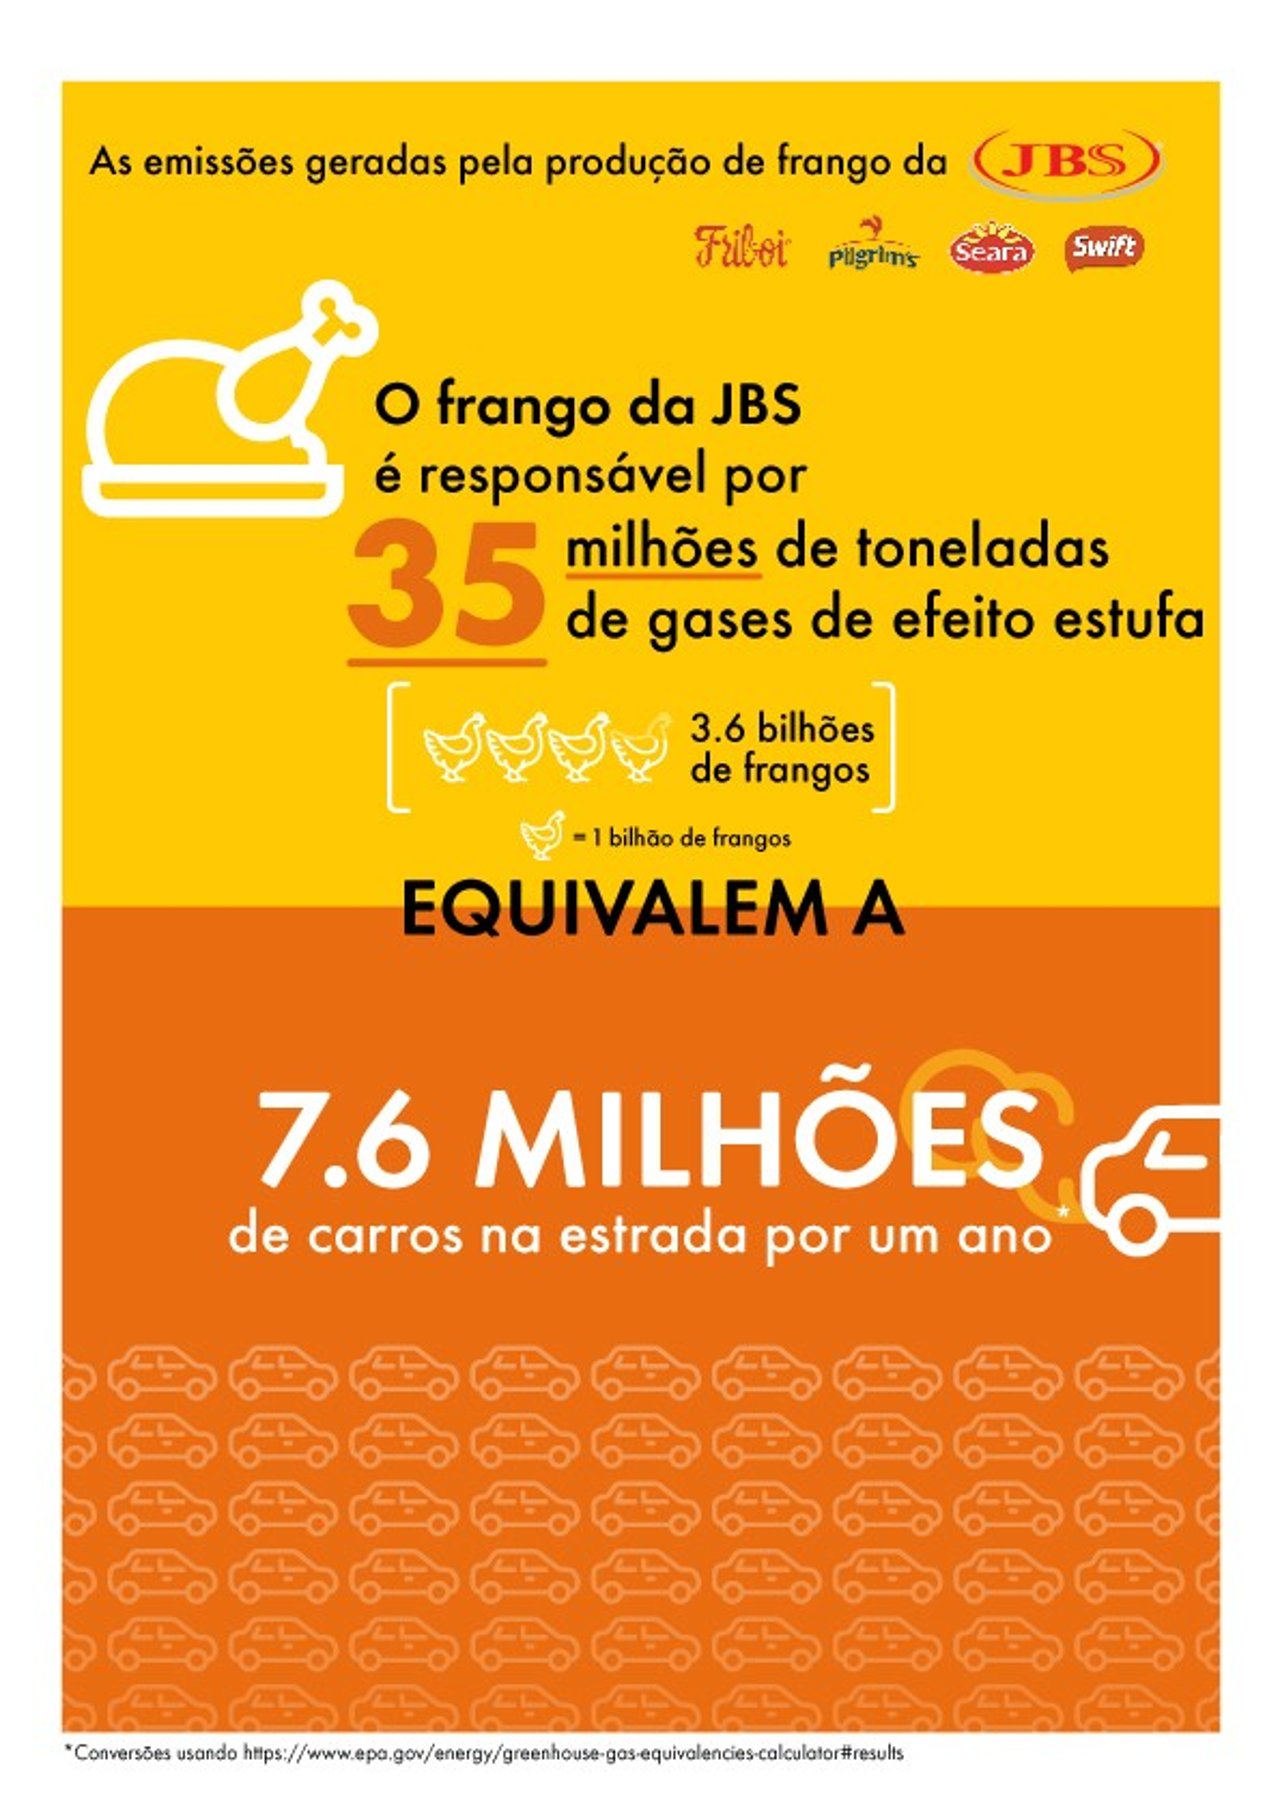 Infográfico explica a relação entre a produção de frangos da JBS e as mudanças climáticas.